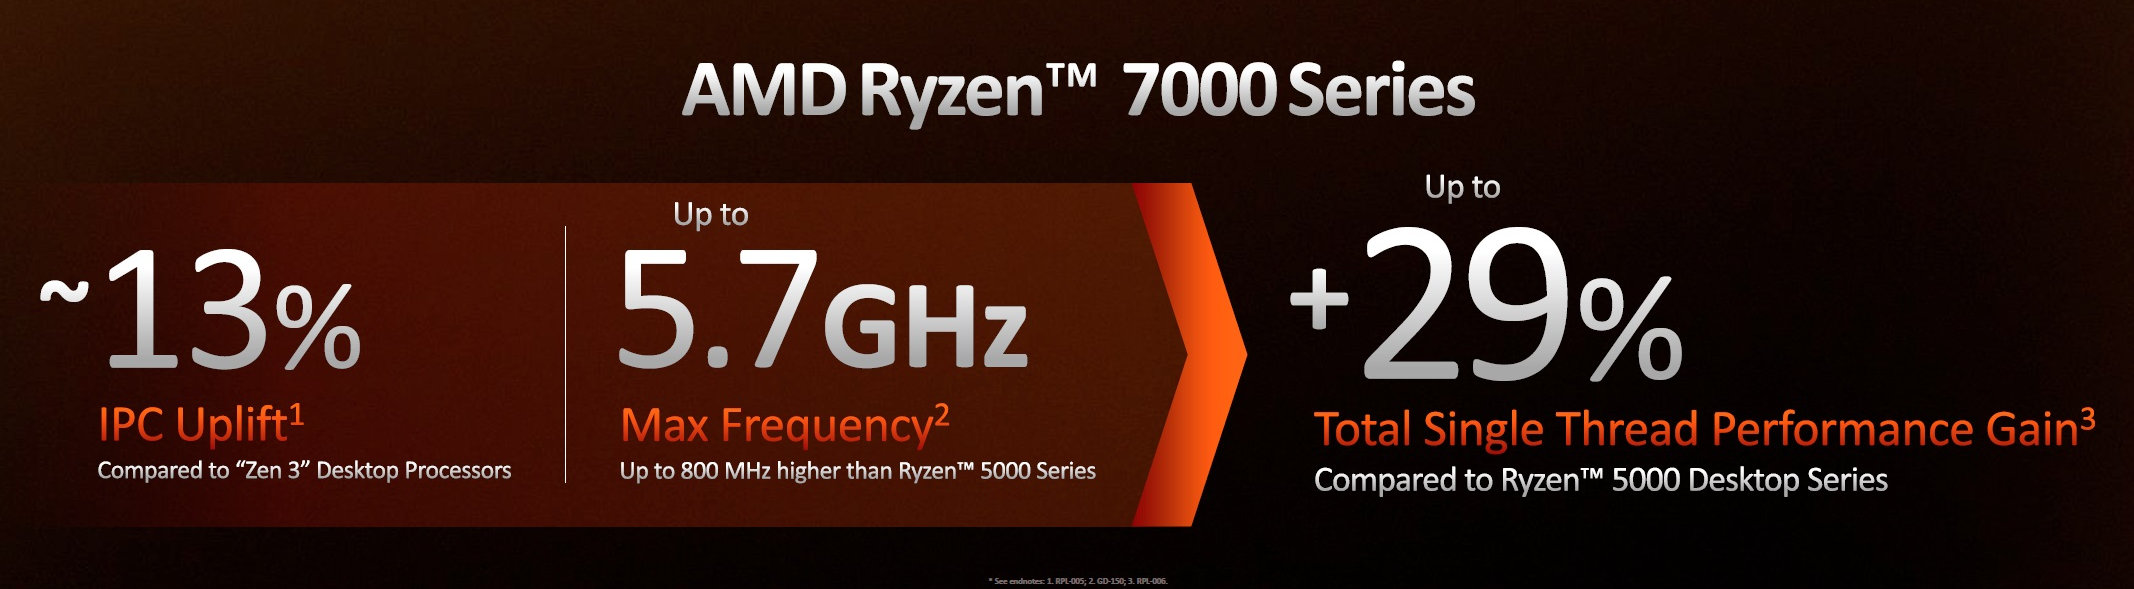 AMD Ryzen 9 7950X, Ryzen 9 7900X, Ryzen 7 7700X, Ryzen 5 7600X